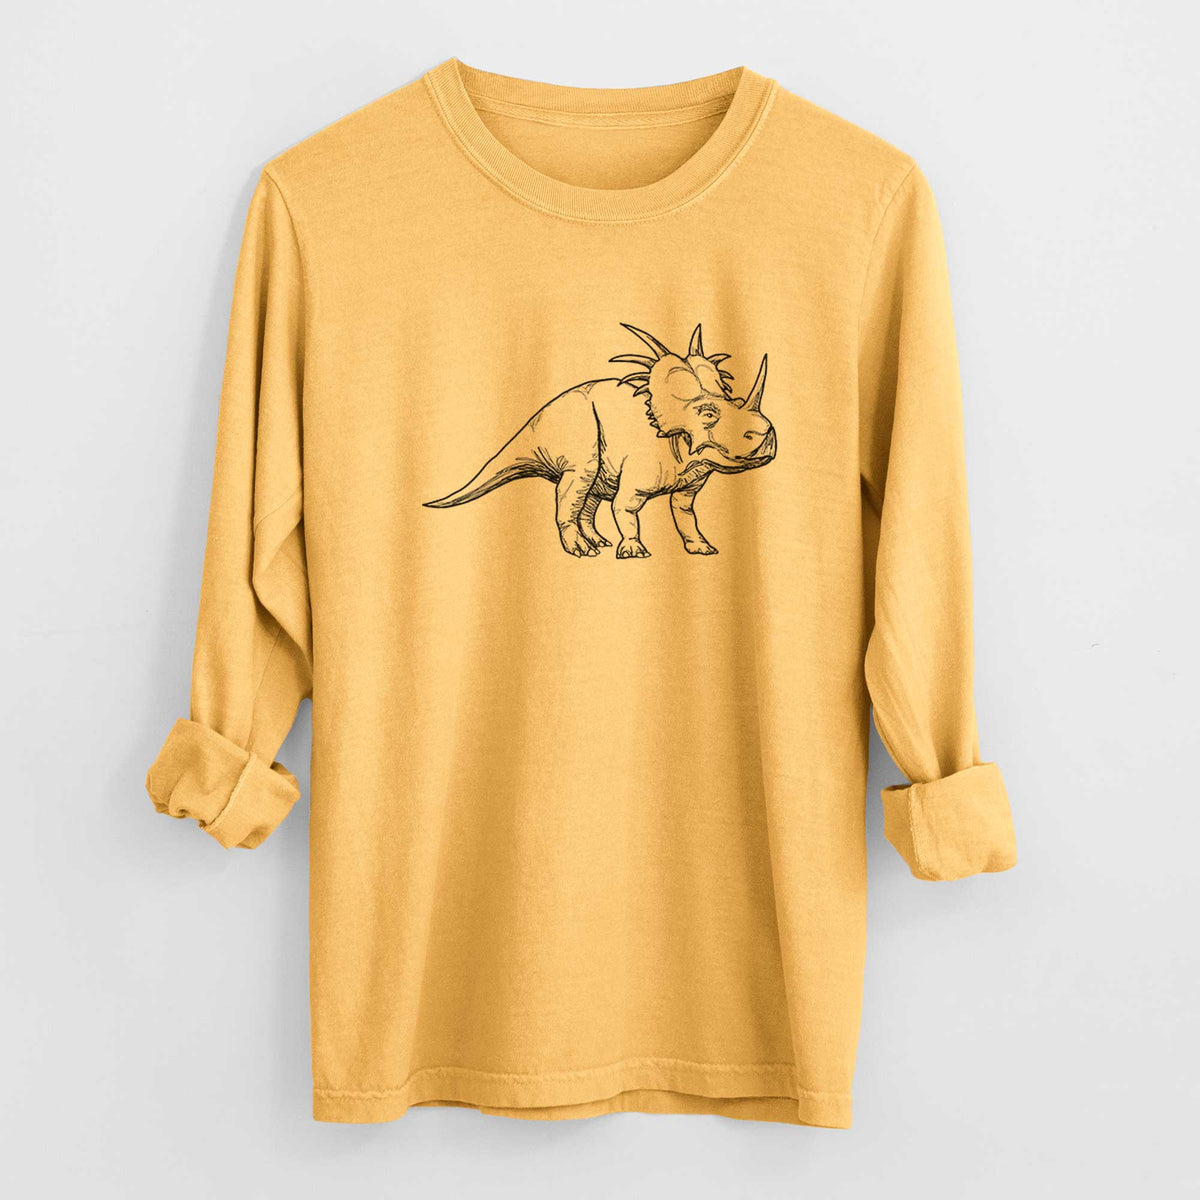 Styracosaurus Albertensis - Heavyweight 100% Cotton Long Sleeve